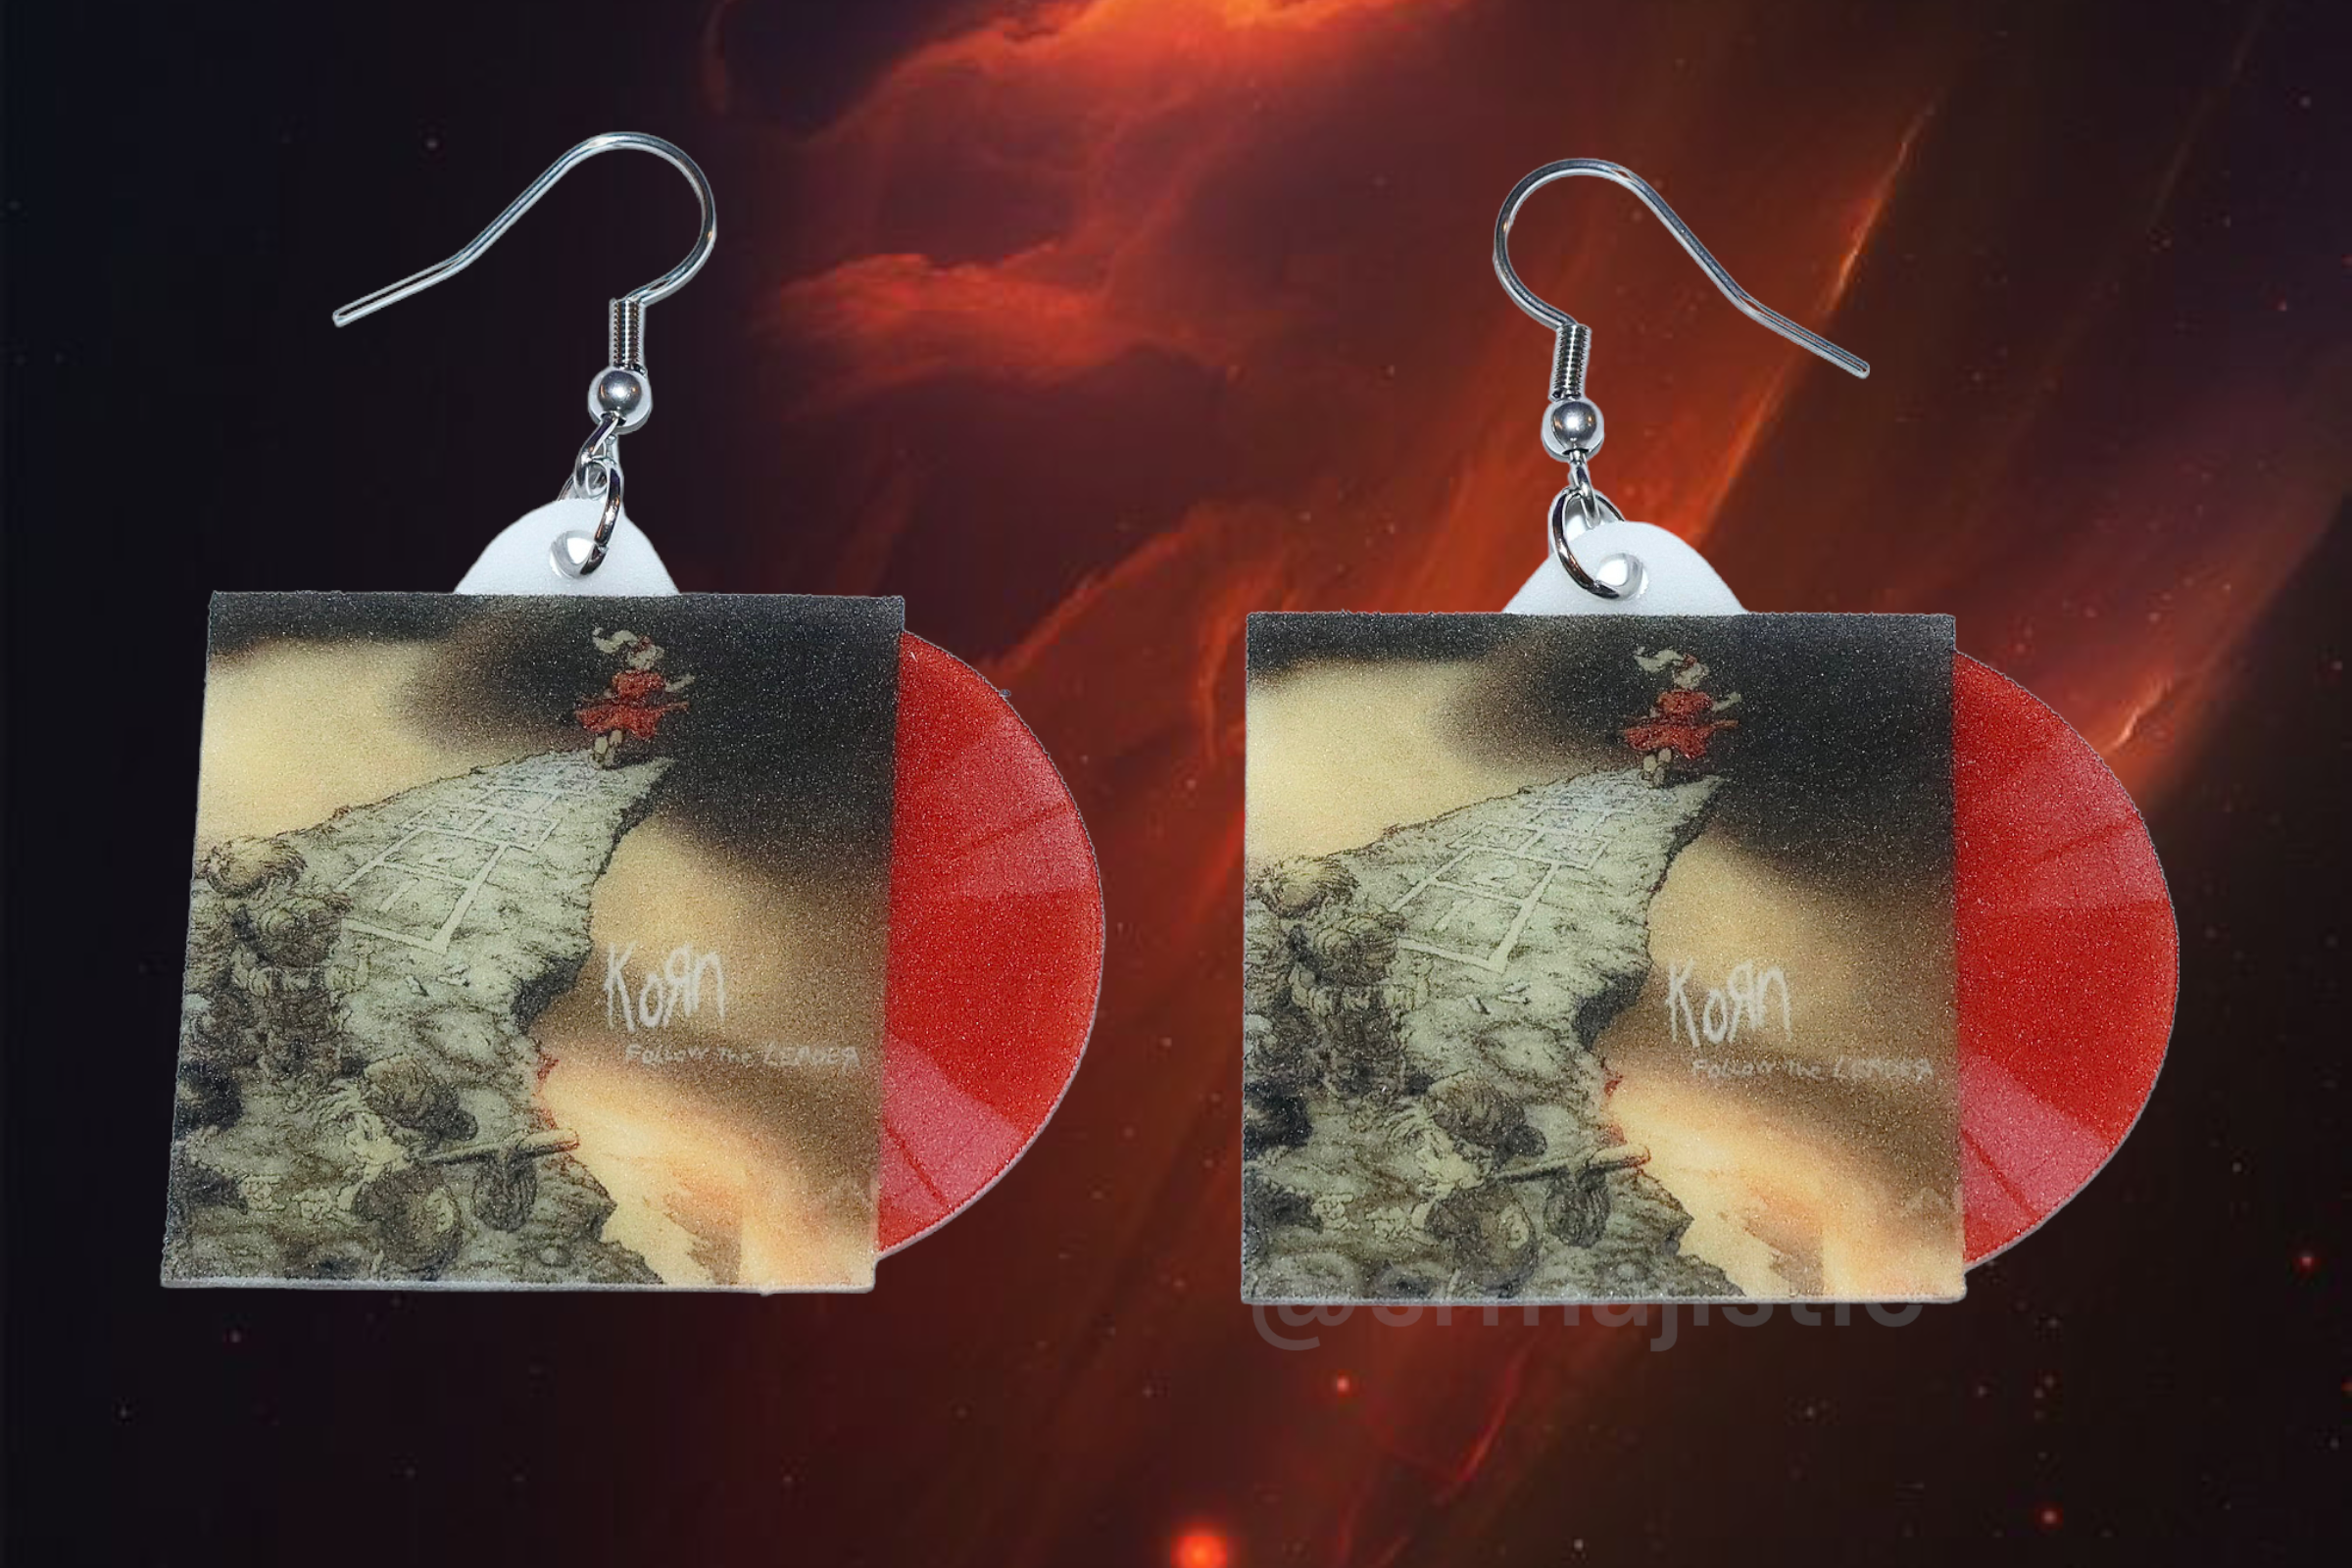 Korn Follow the Leader Vinyl Album Handmade Earrings!